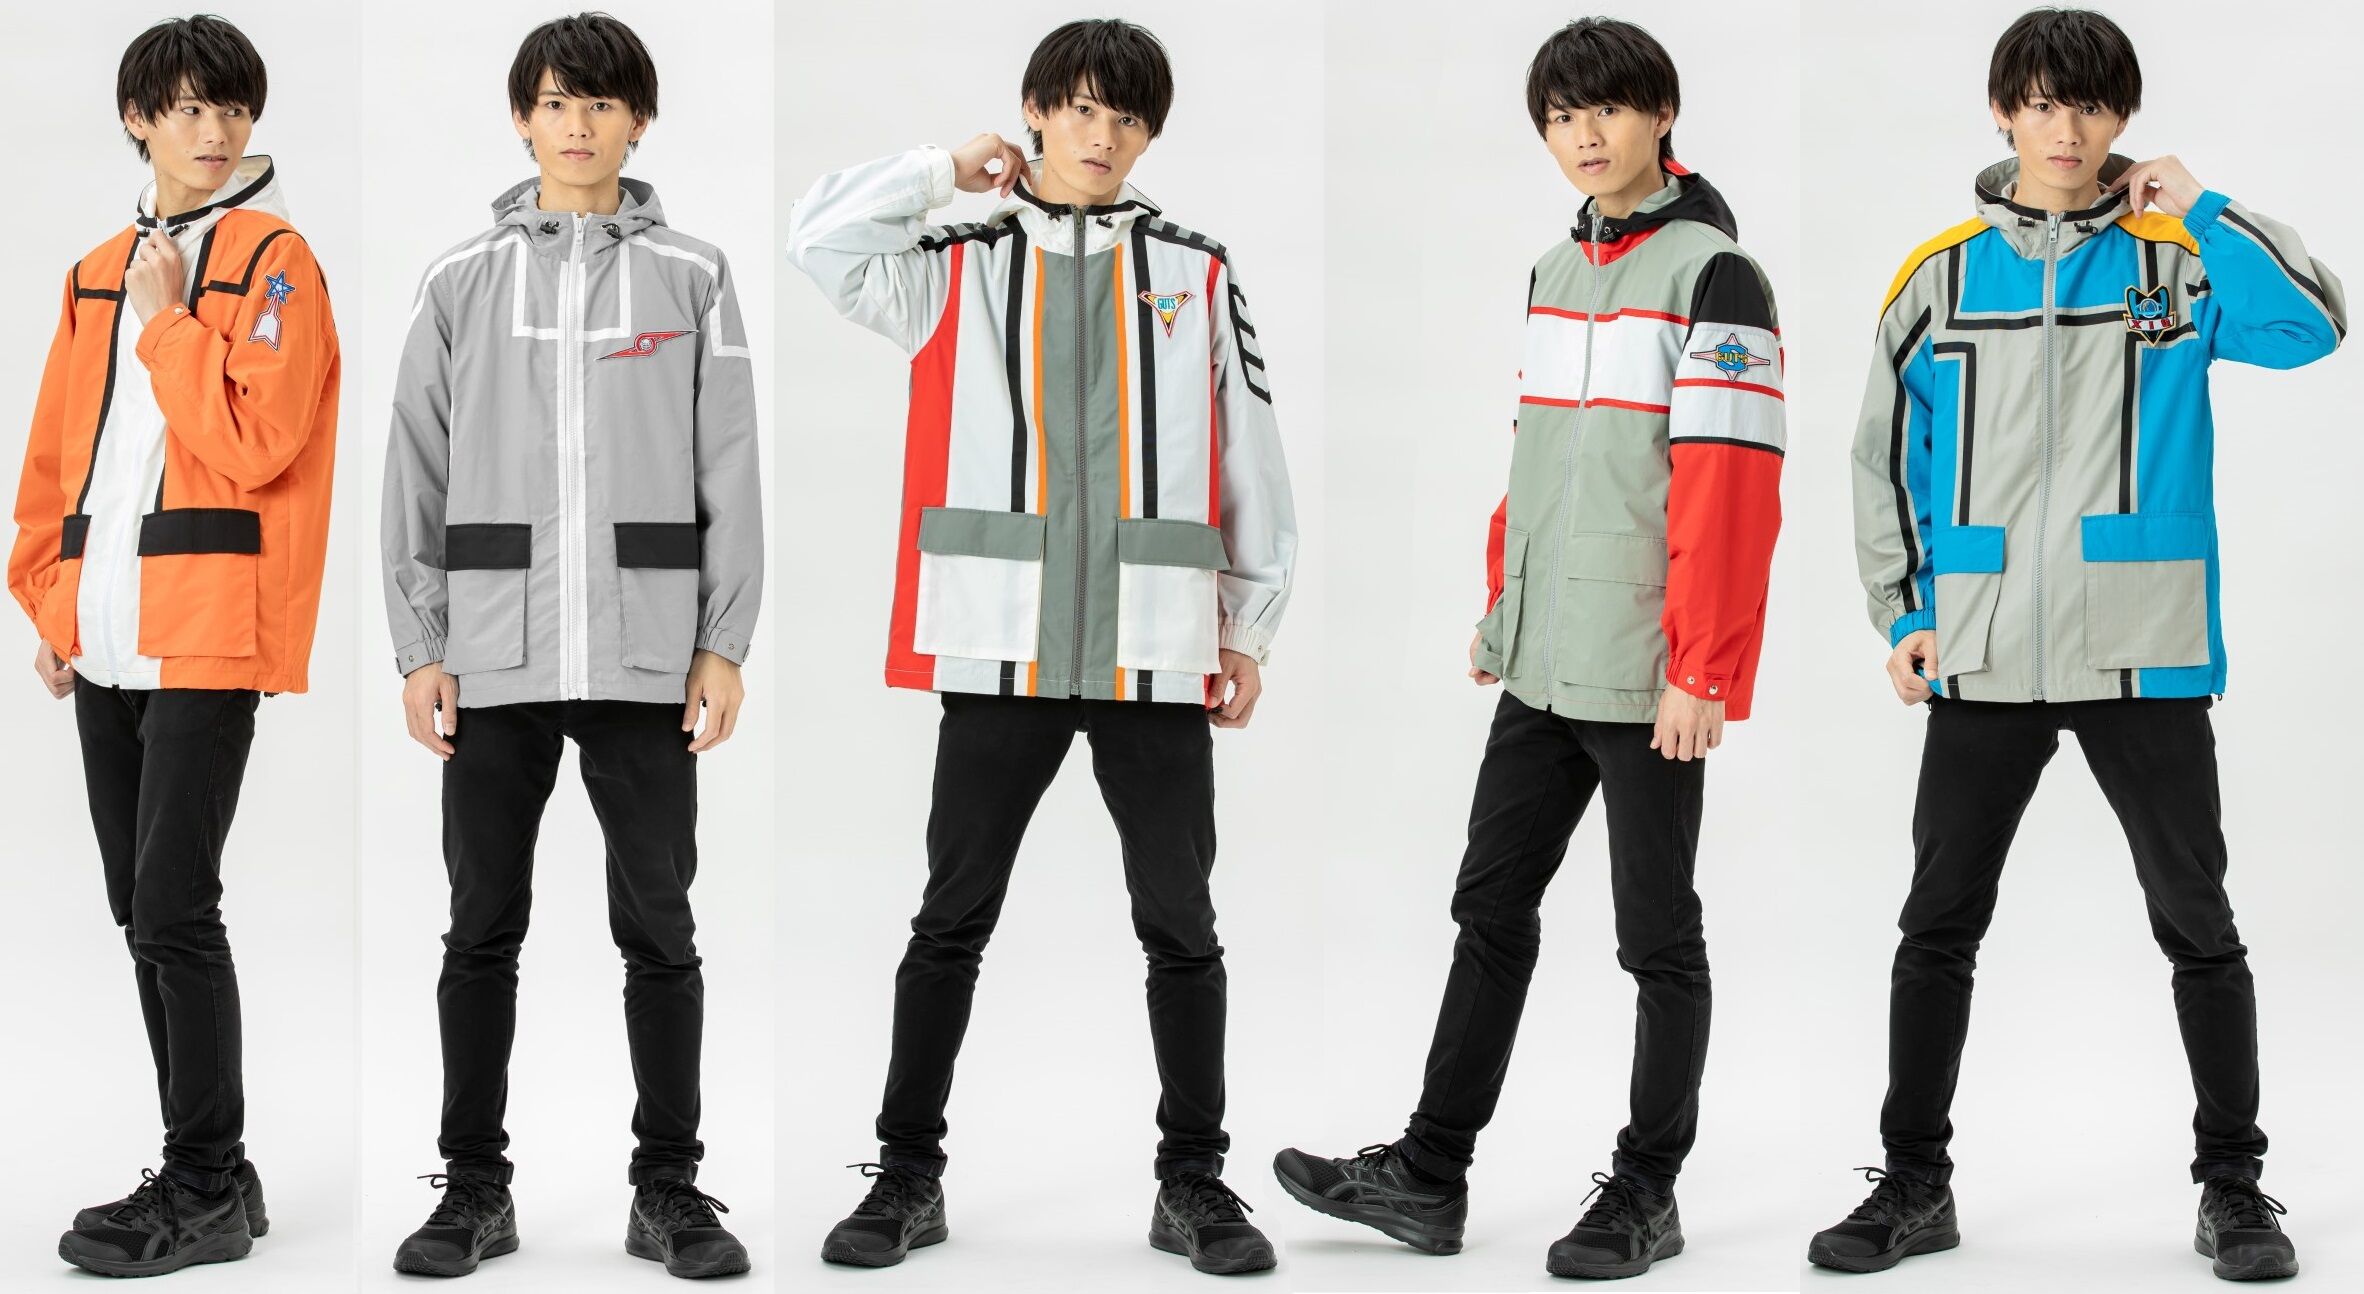 万代推出《奥特曼》战队主题外套 单件售价2万日元